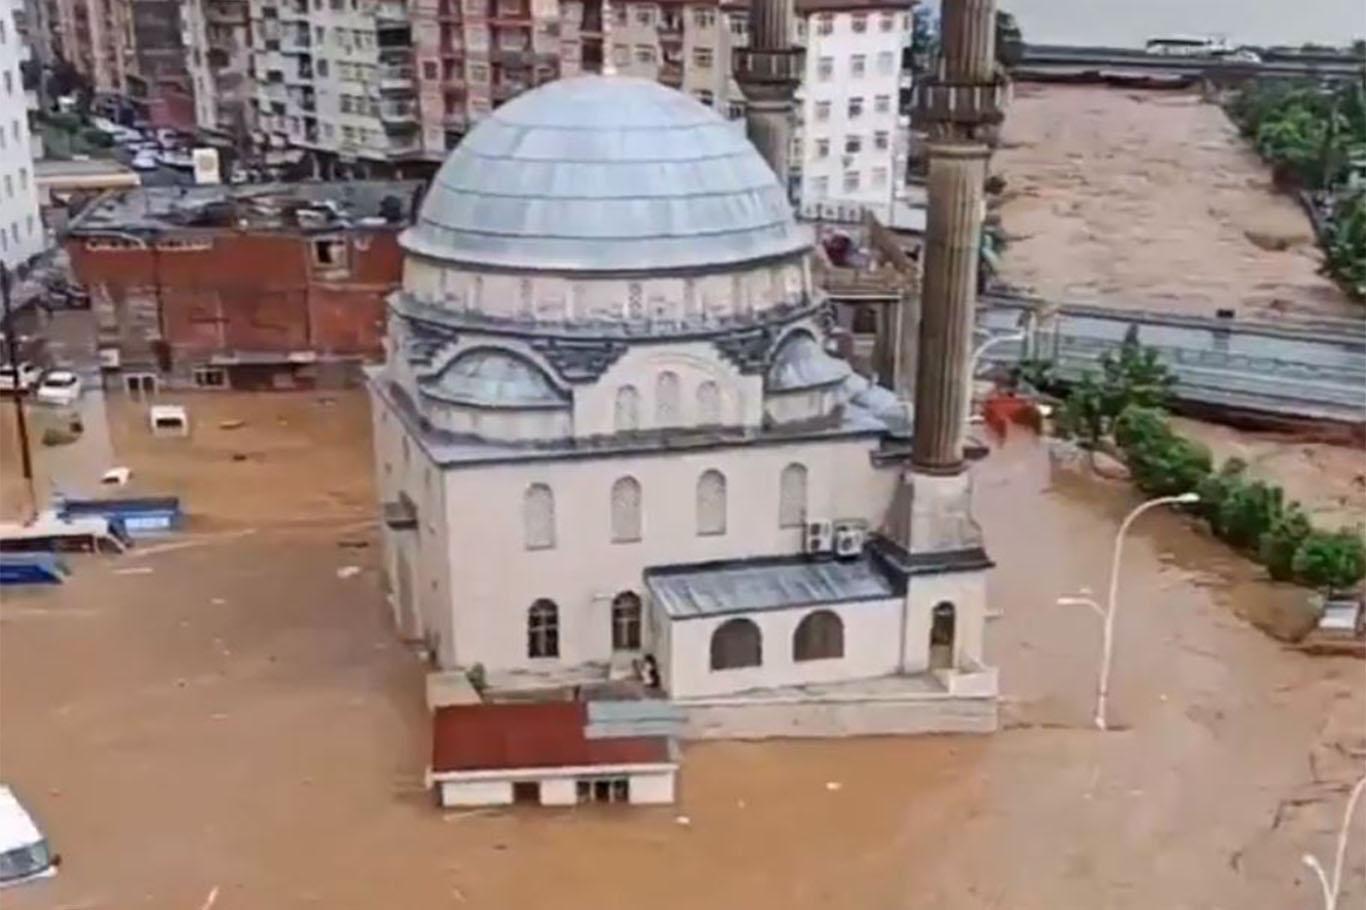 Flash floods hit Turkey’s Black Sea region: 2 dead